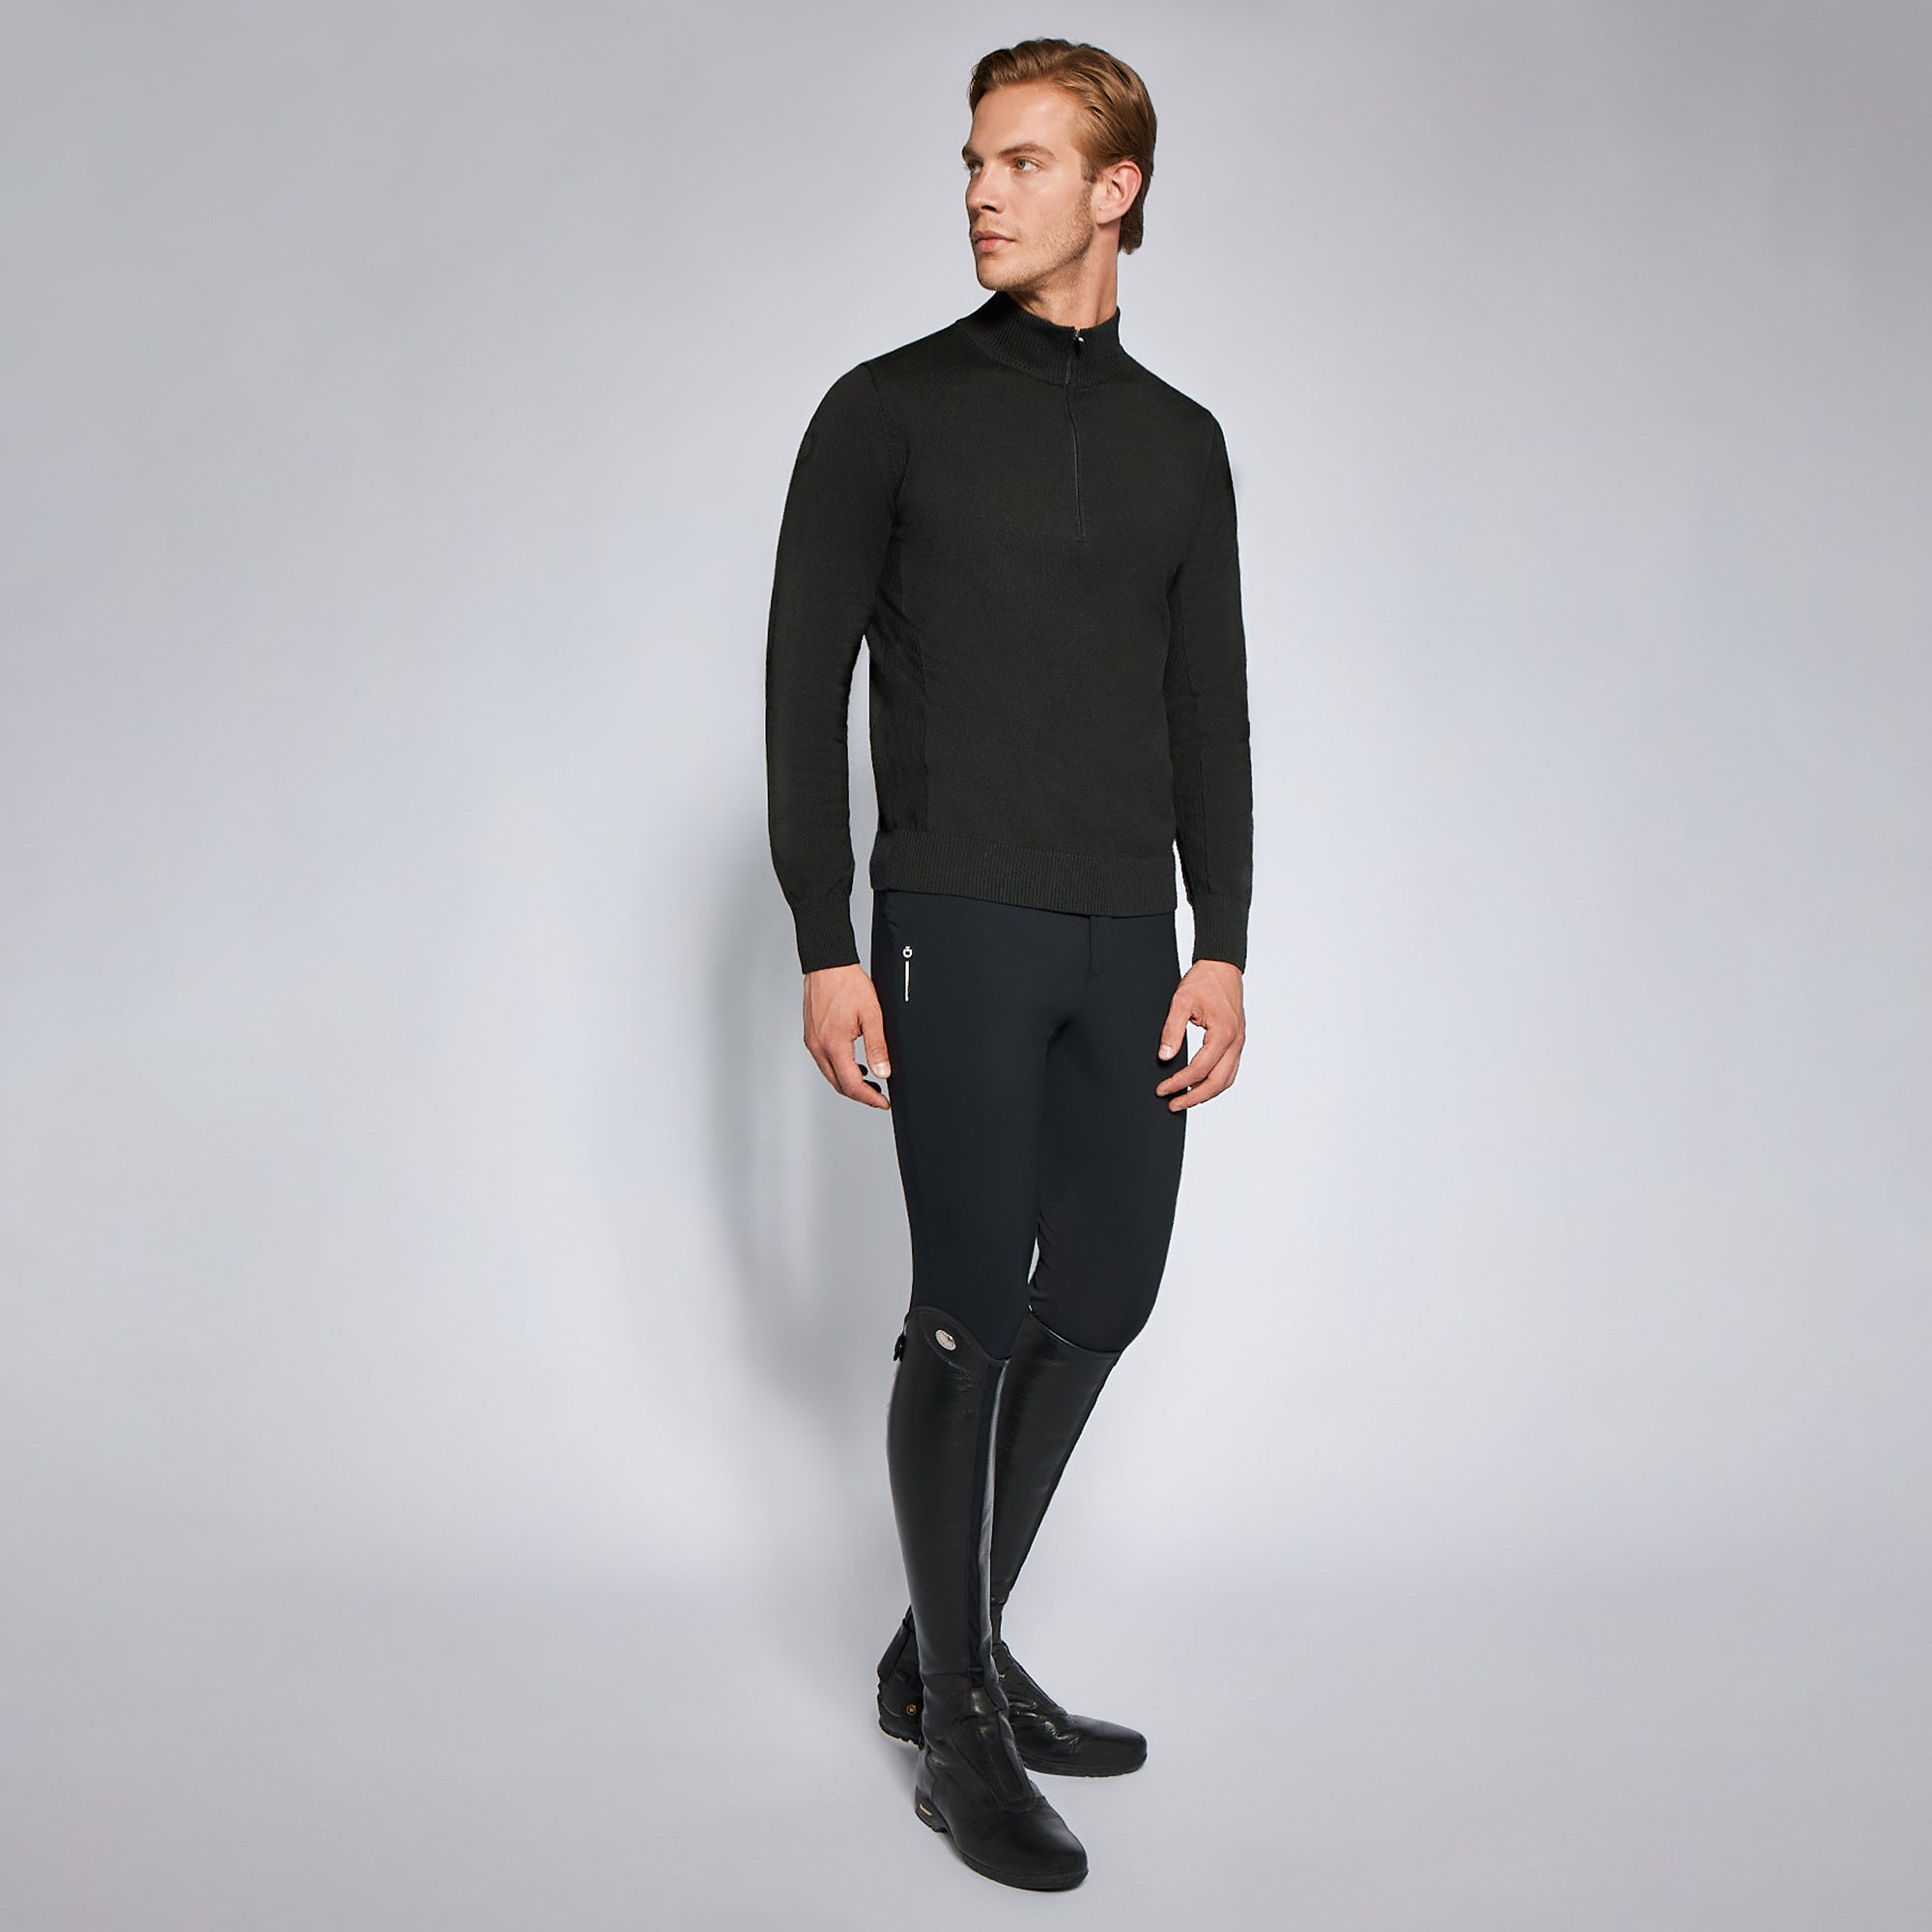 Mens Revo Sport Knit Half Zip Sweater - Black